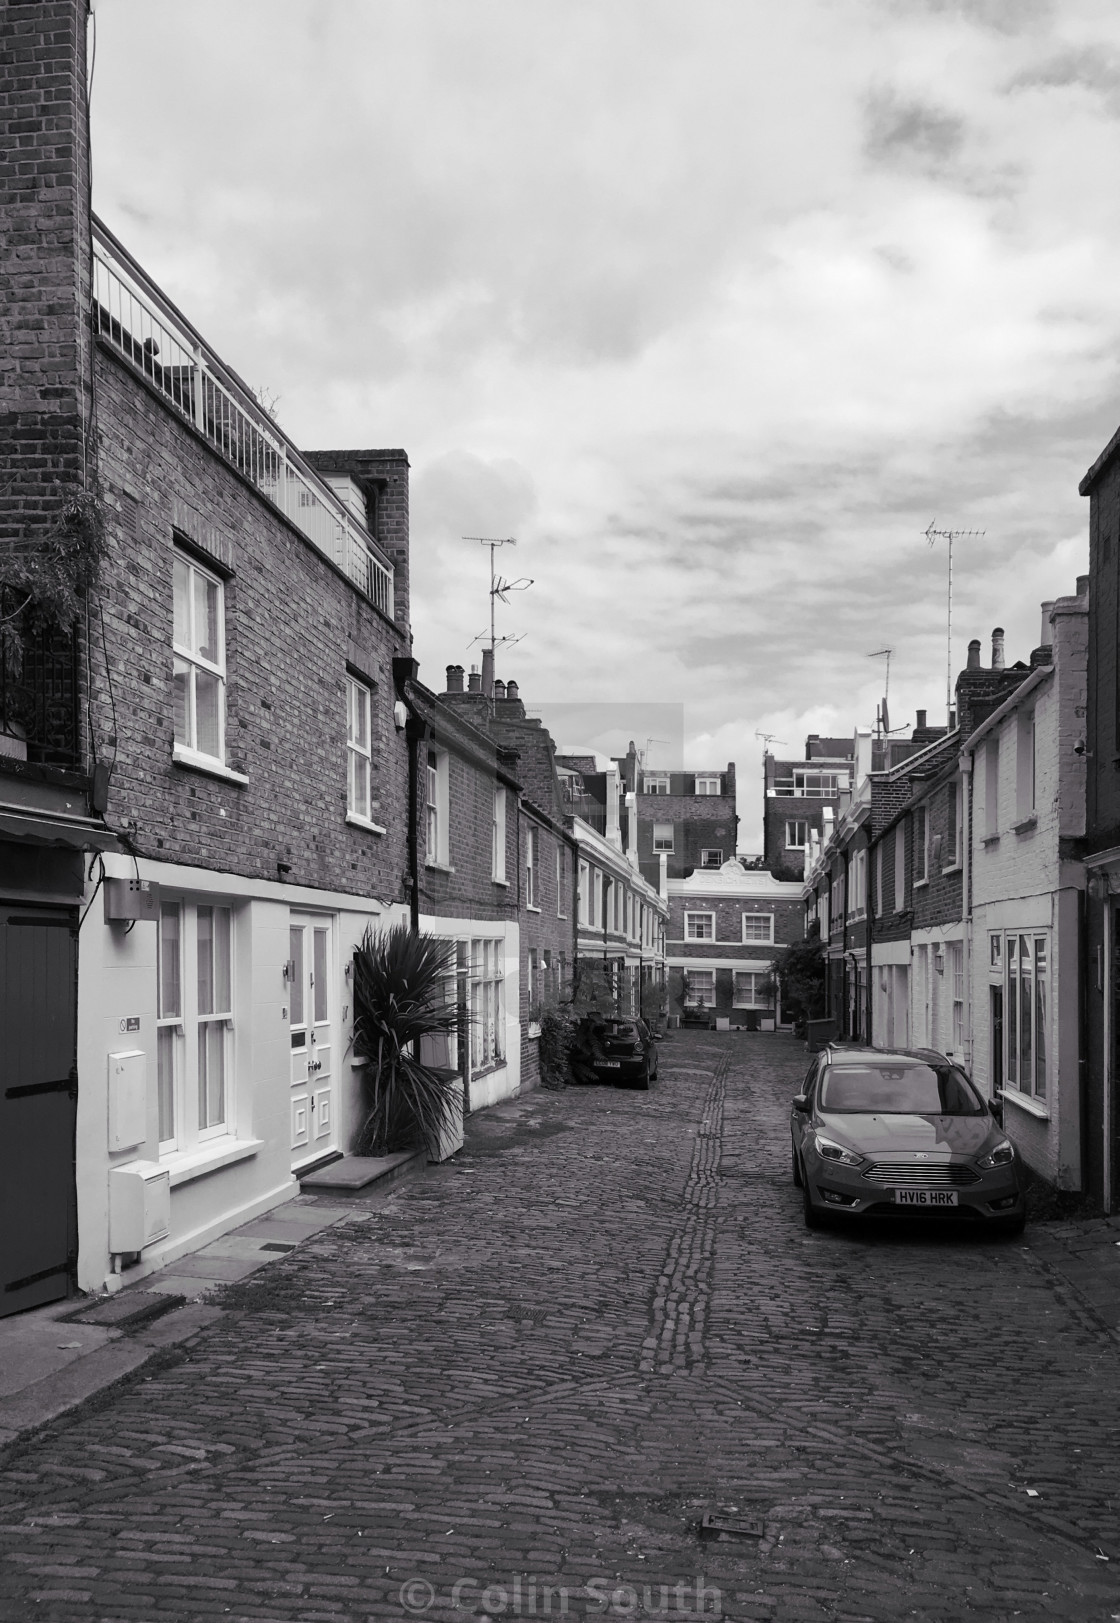 "Denbigh Close, off Portobello Road, London" stock image